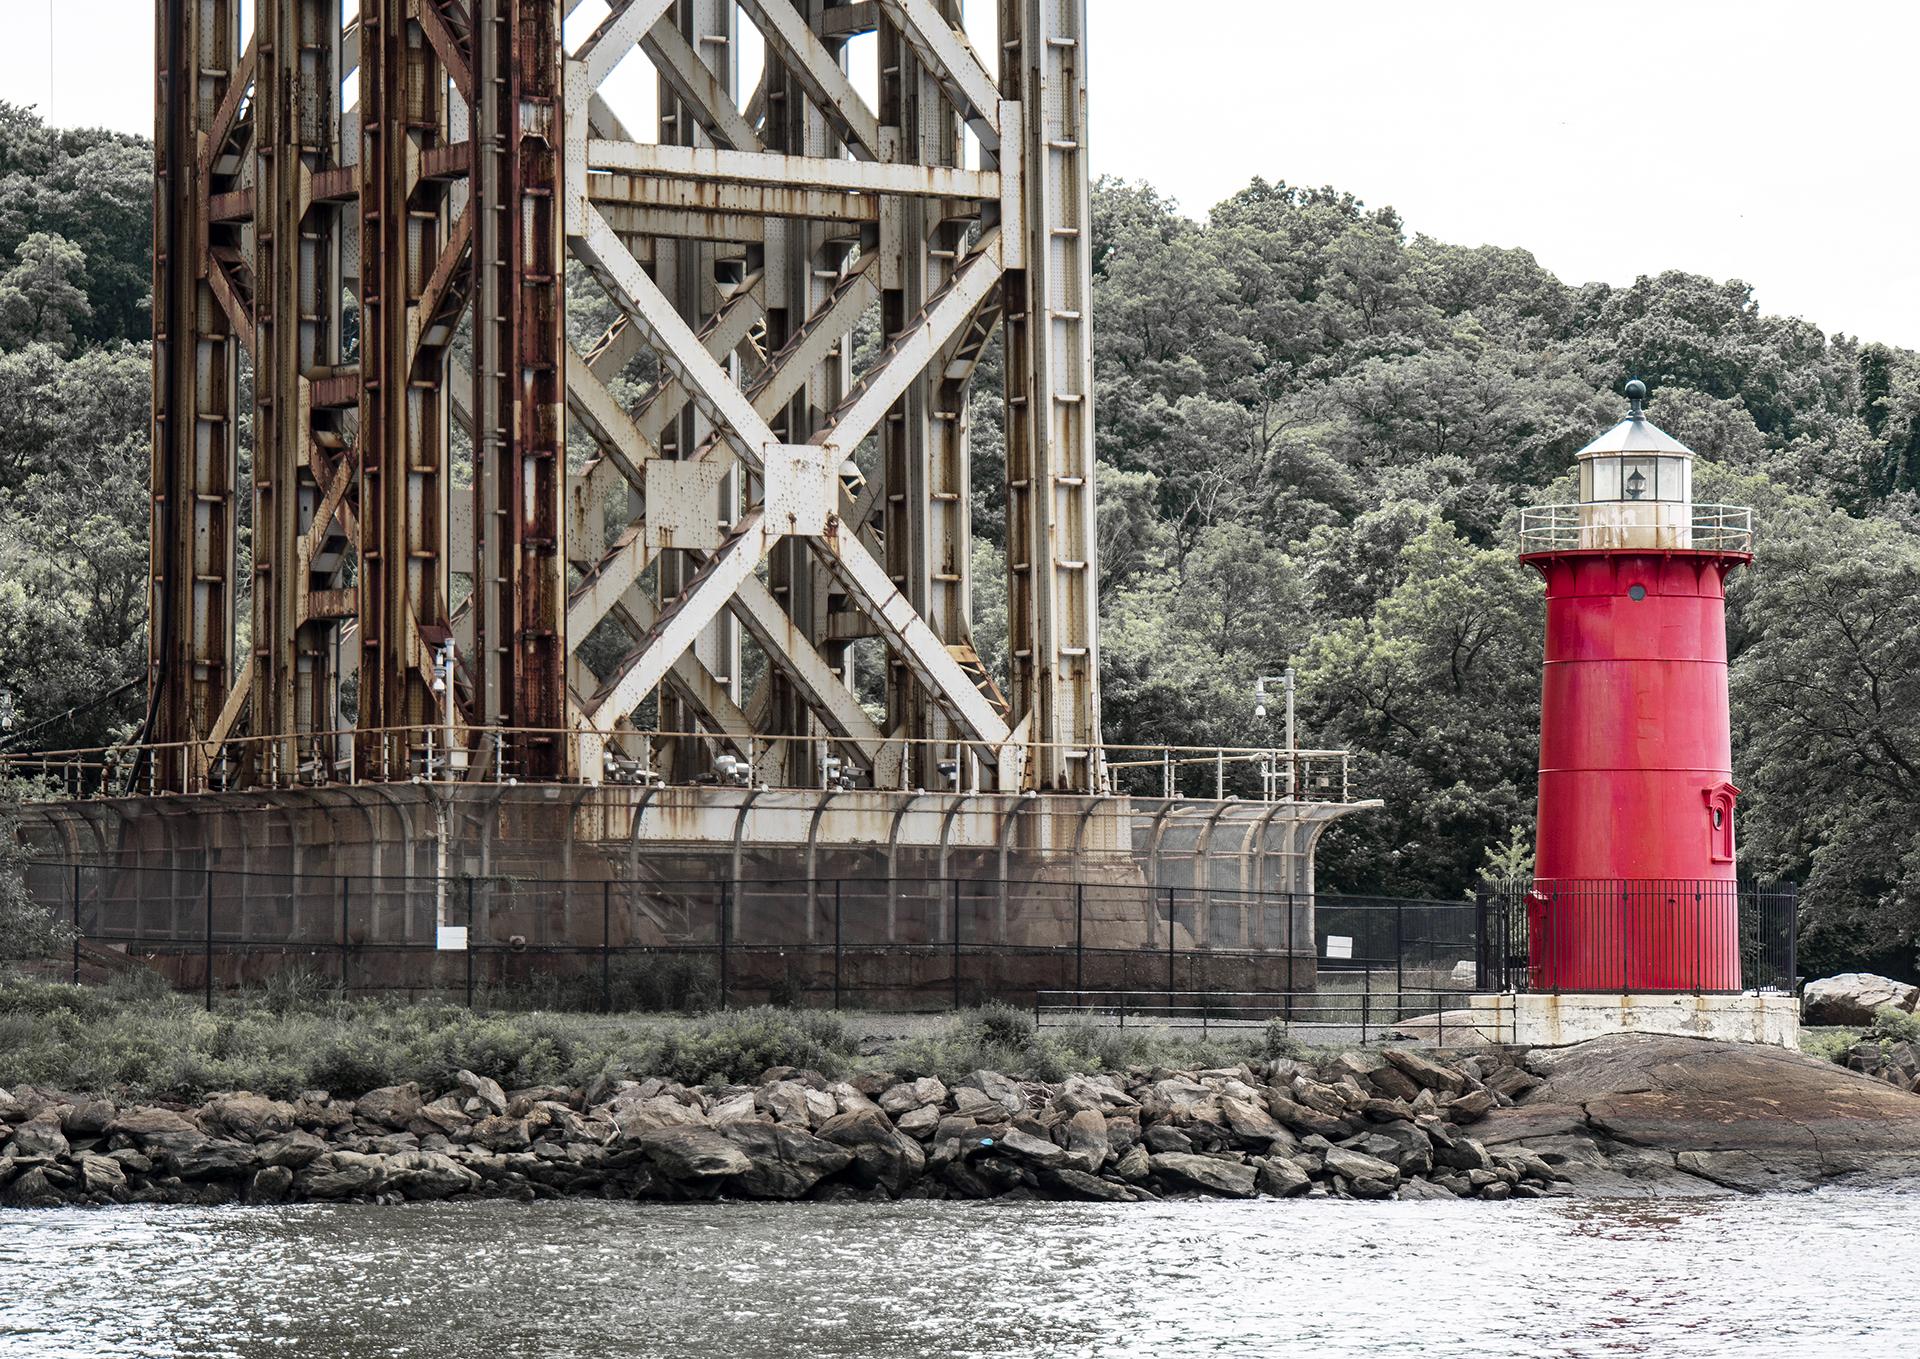 New York Photography Awards Winner - New York's Little Red Lighthouse